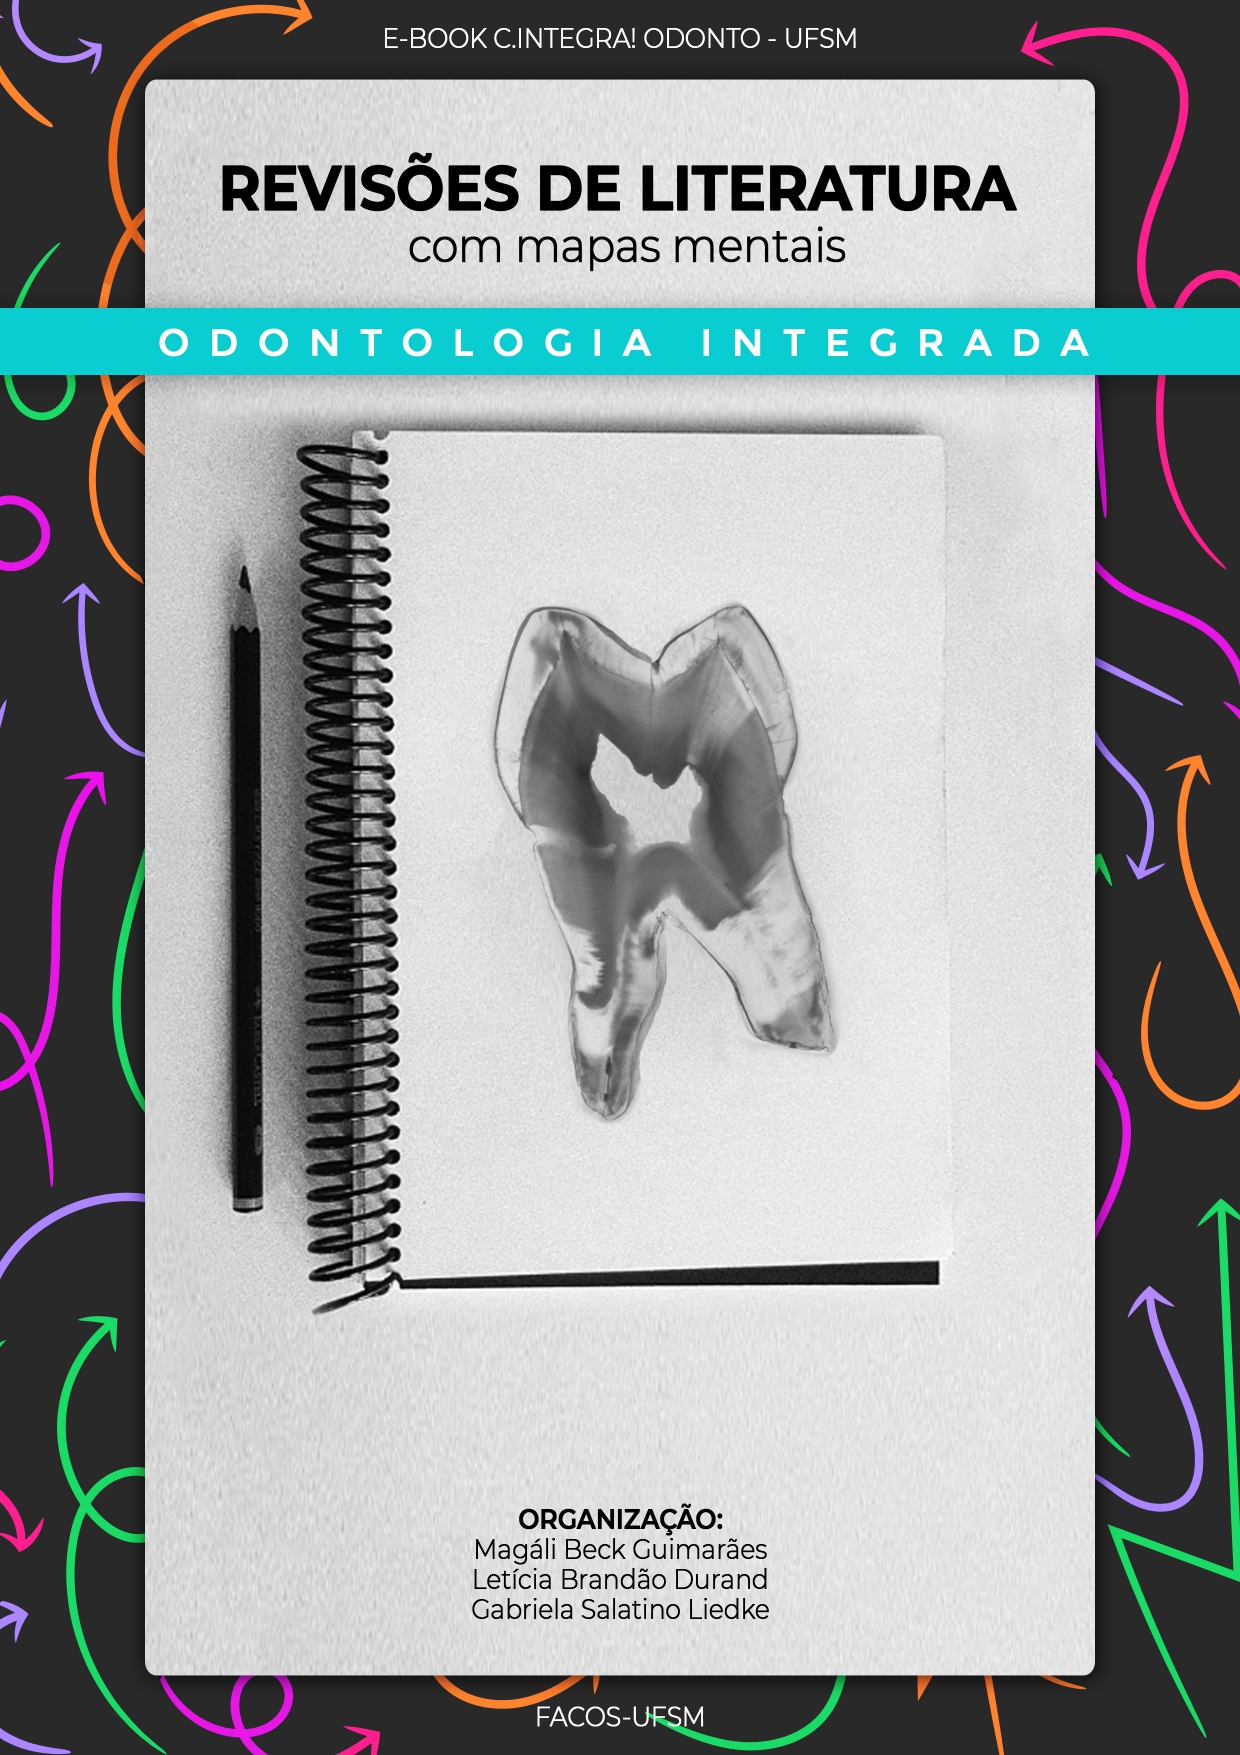 Capa ebook: Odontologia integrada. Revisões de literatura com mapas mentais